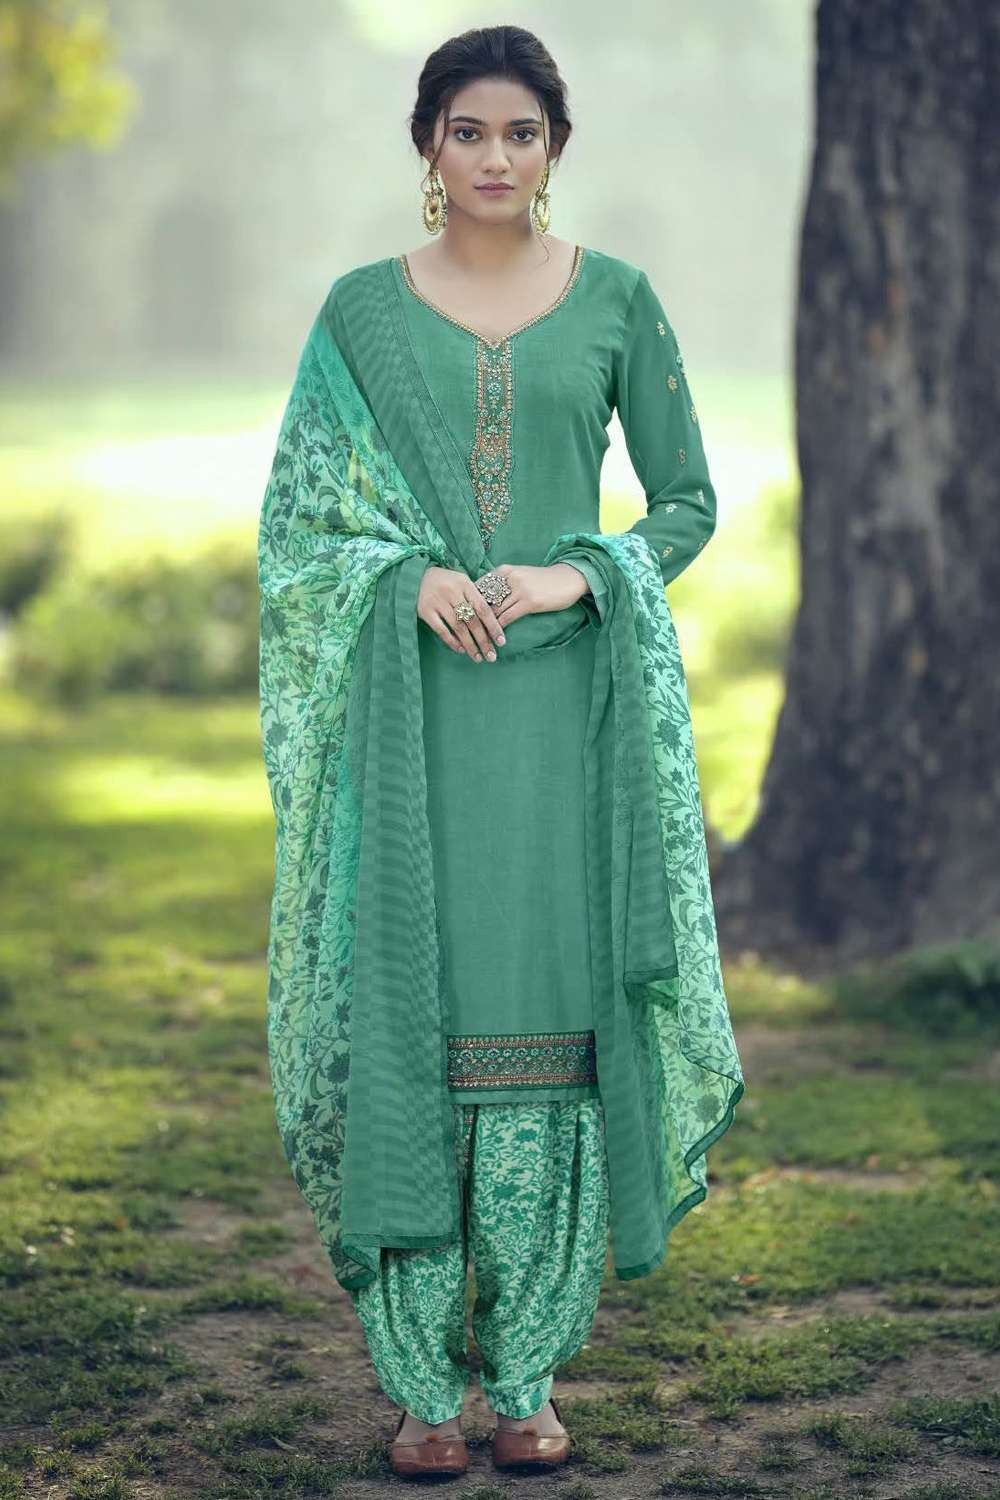 Beautiful White Rayon Salwar Kameez Pakistani Designer Patiyala Suit Women  Dress | eBay